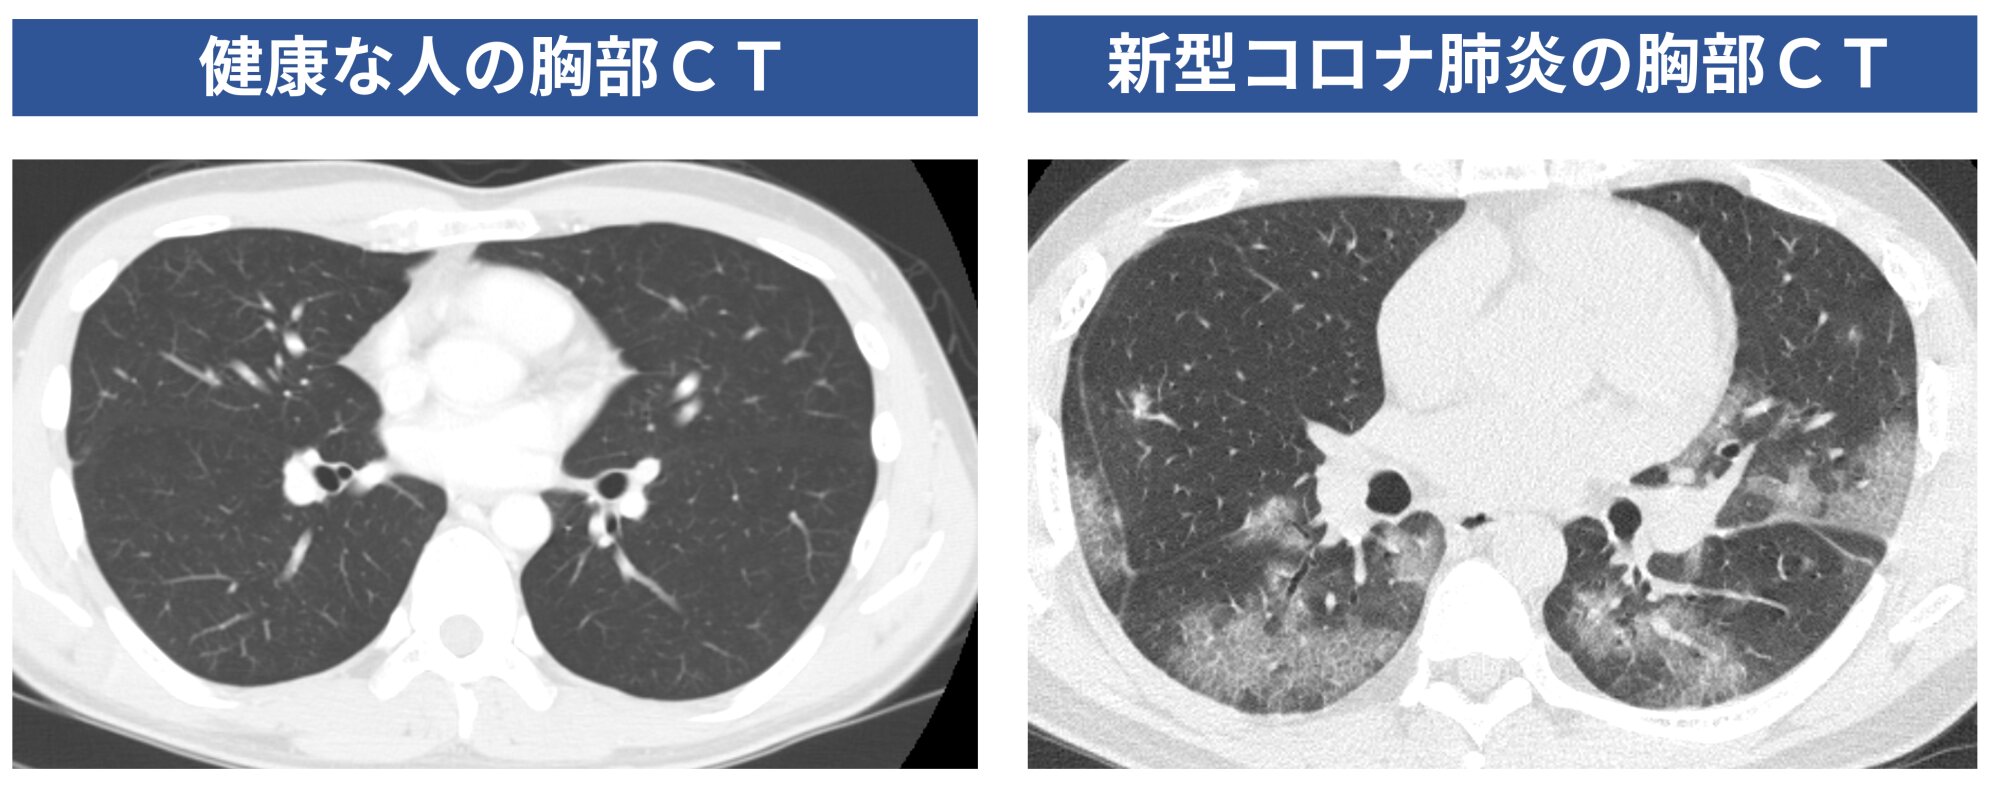 図１．健康な人（筆者自身のもの）の胸部CT写真と新型コロナ患者の胸部CT写真（患者の同意を得て掲載）